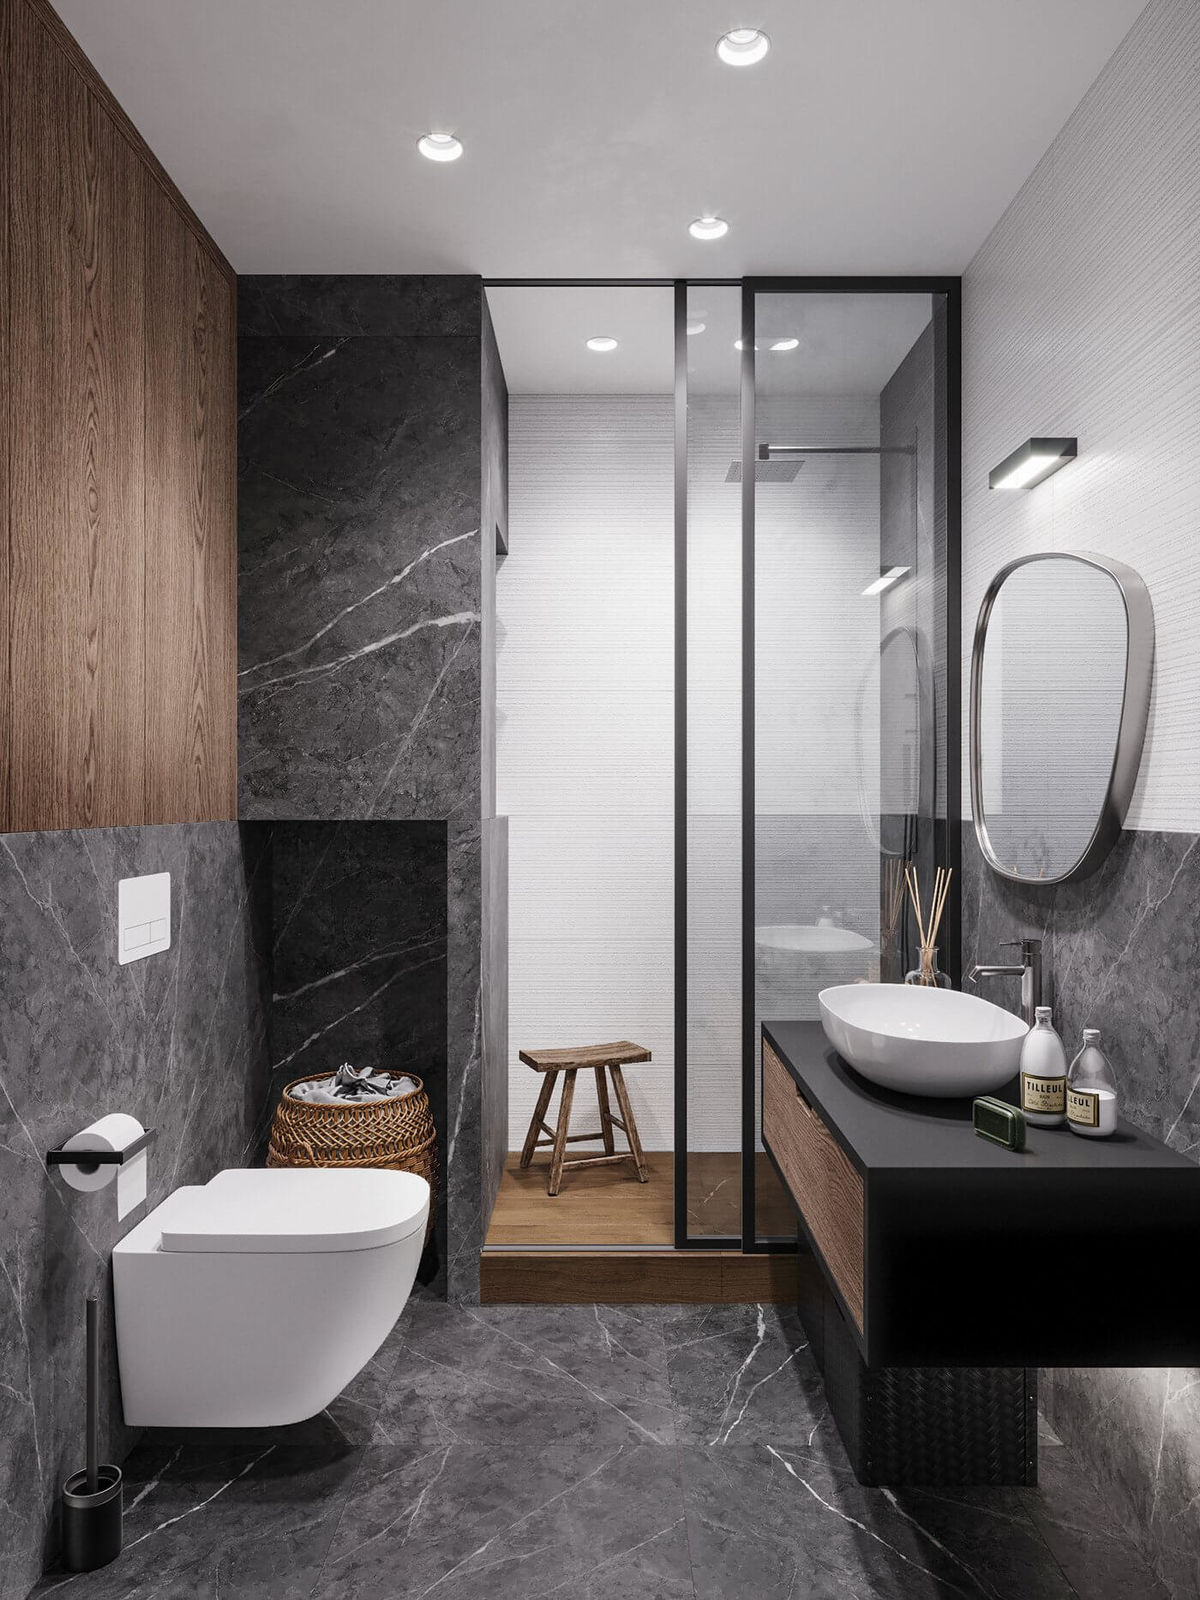 Фото дизайнерских решений для маленьких ванных комнат